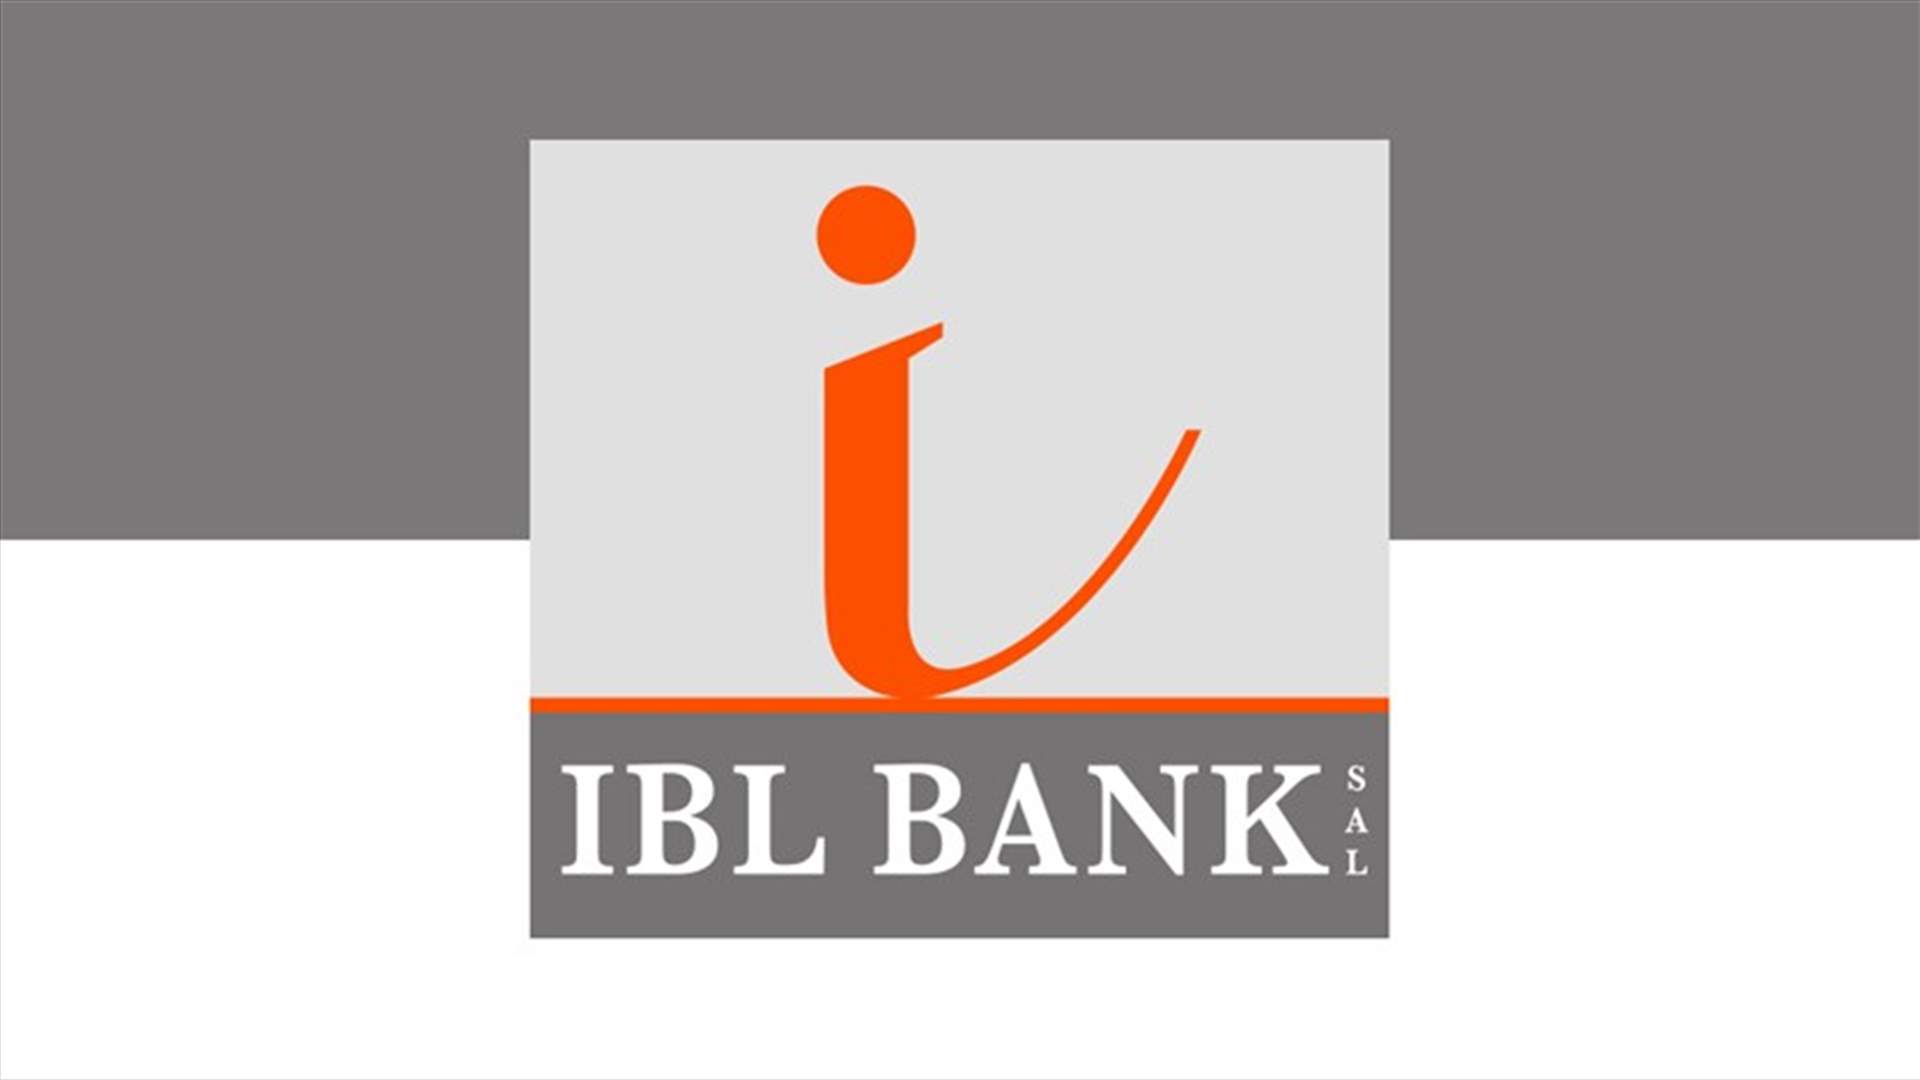 توضيح لـ IBL BANK حول تسريب مراسلة مع شركة عميلة